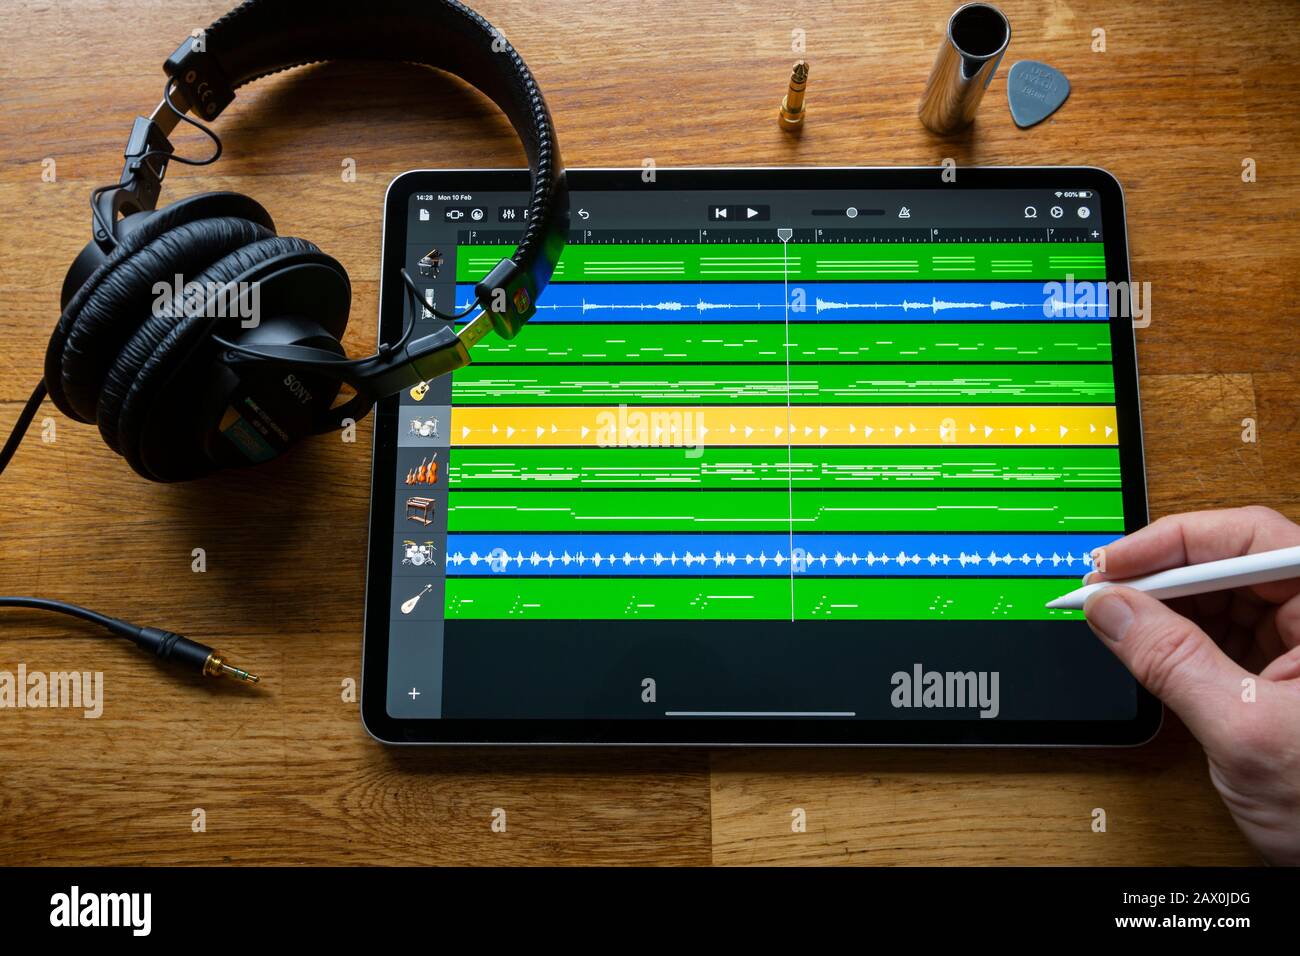 Bath, Royaume-Uni - 10 FÉVRIER 2020 : application garage Band utilisée pour créer et organiser de la musique sur un Apple iPad Pro dans un environnement de studio à domicile. Banque D'Images